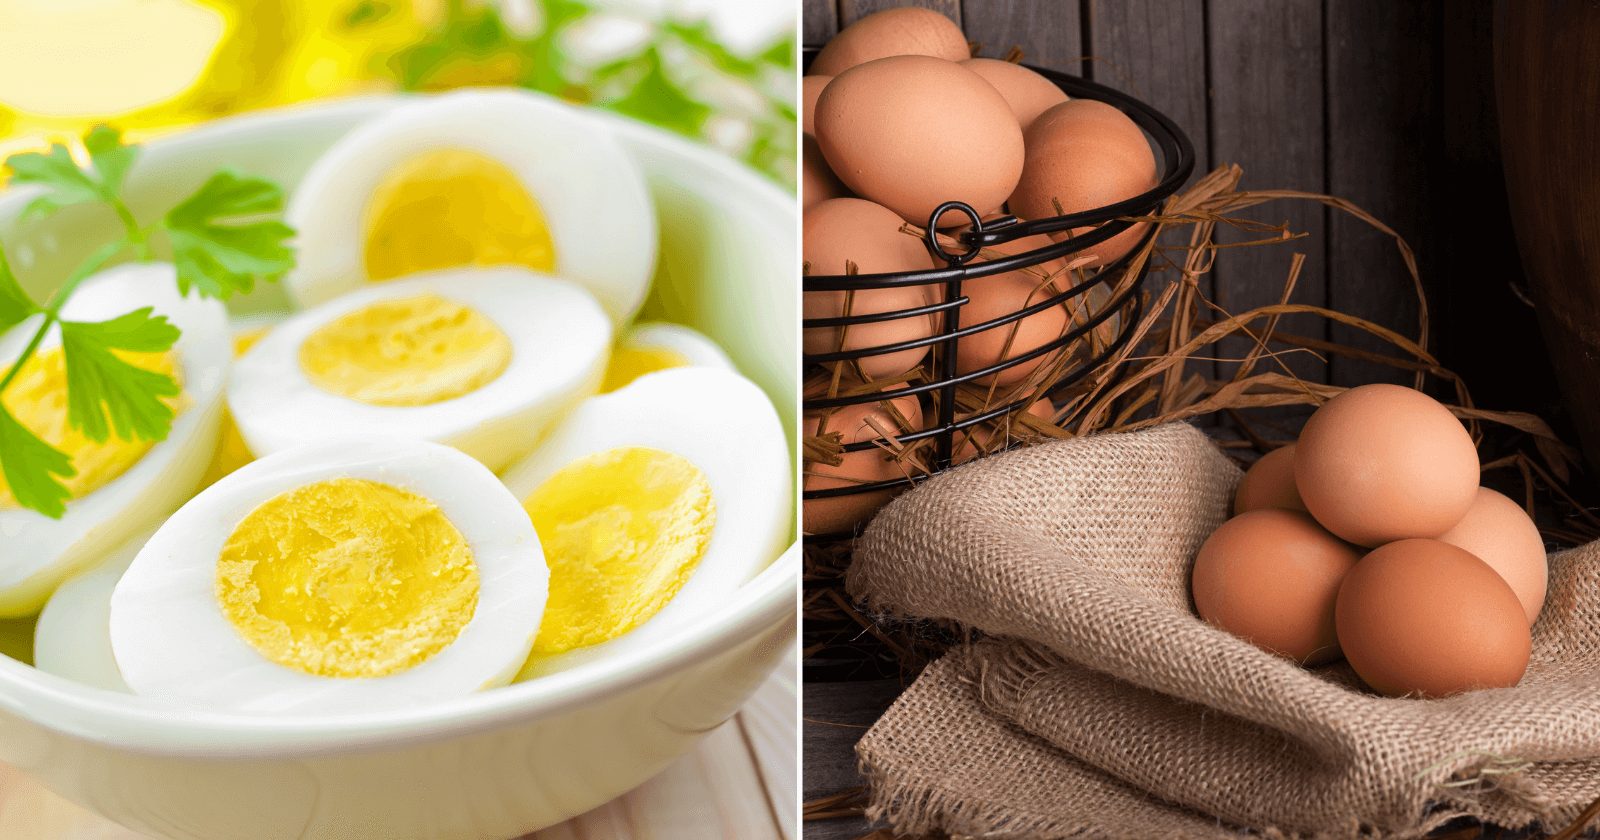 Dieta do ovo: como ela funciona e o que pode ou não comer